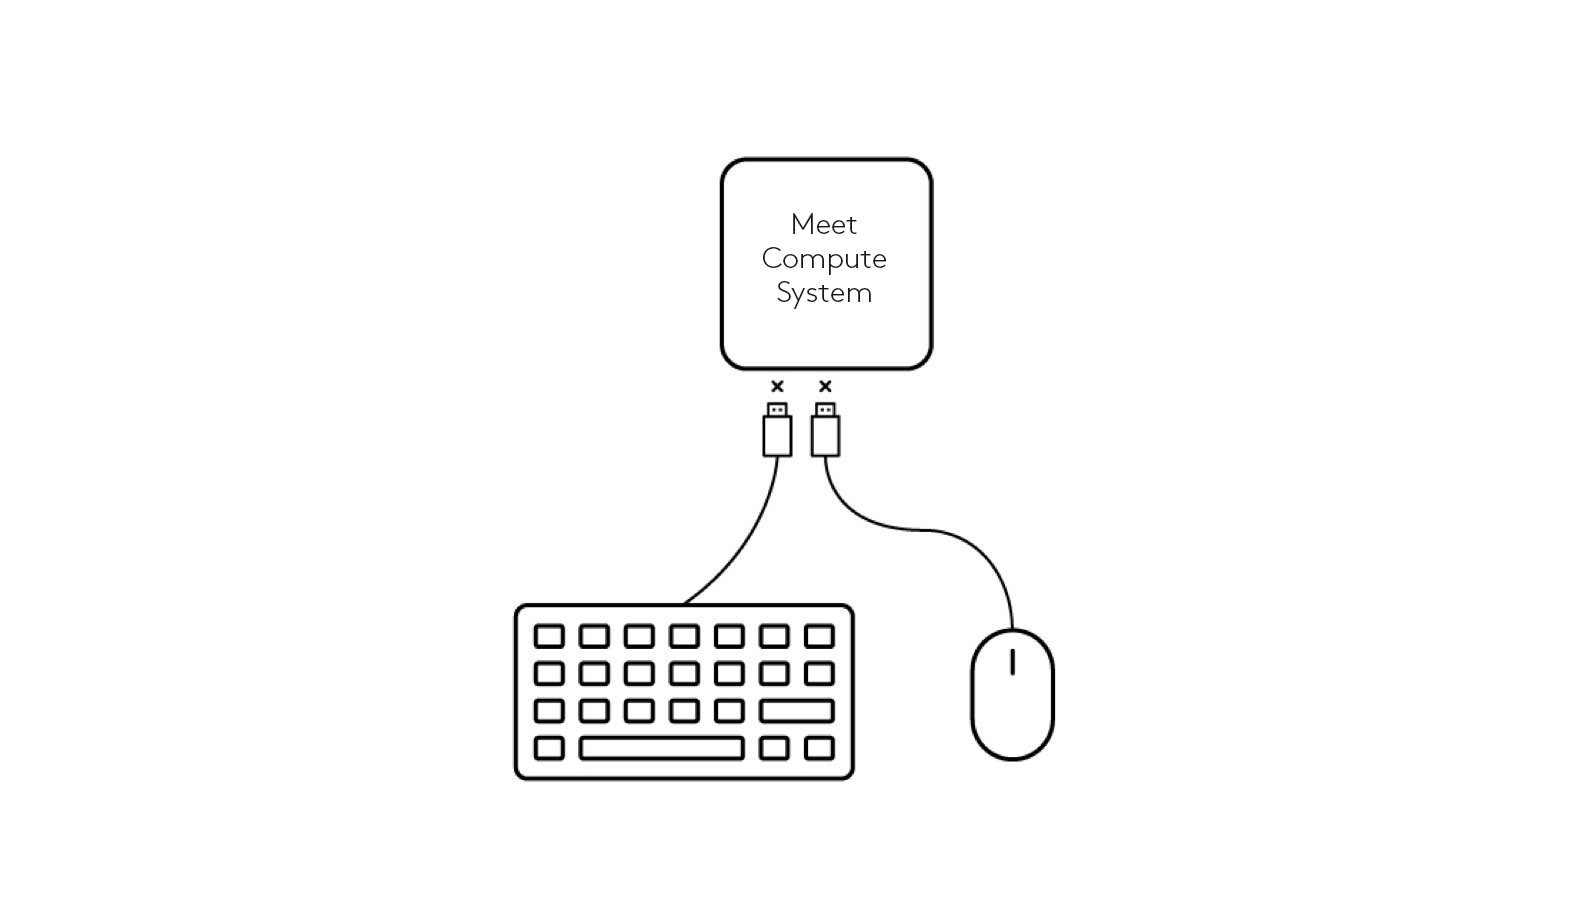 Diagramm: Trennen von Tastatur und Maus vom Meet-Computing-System